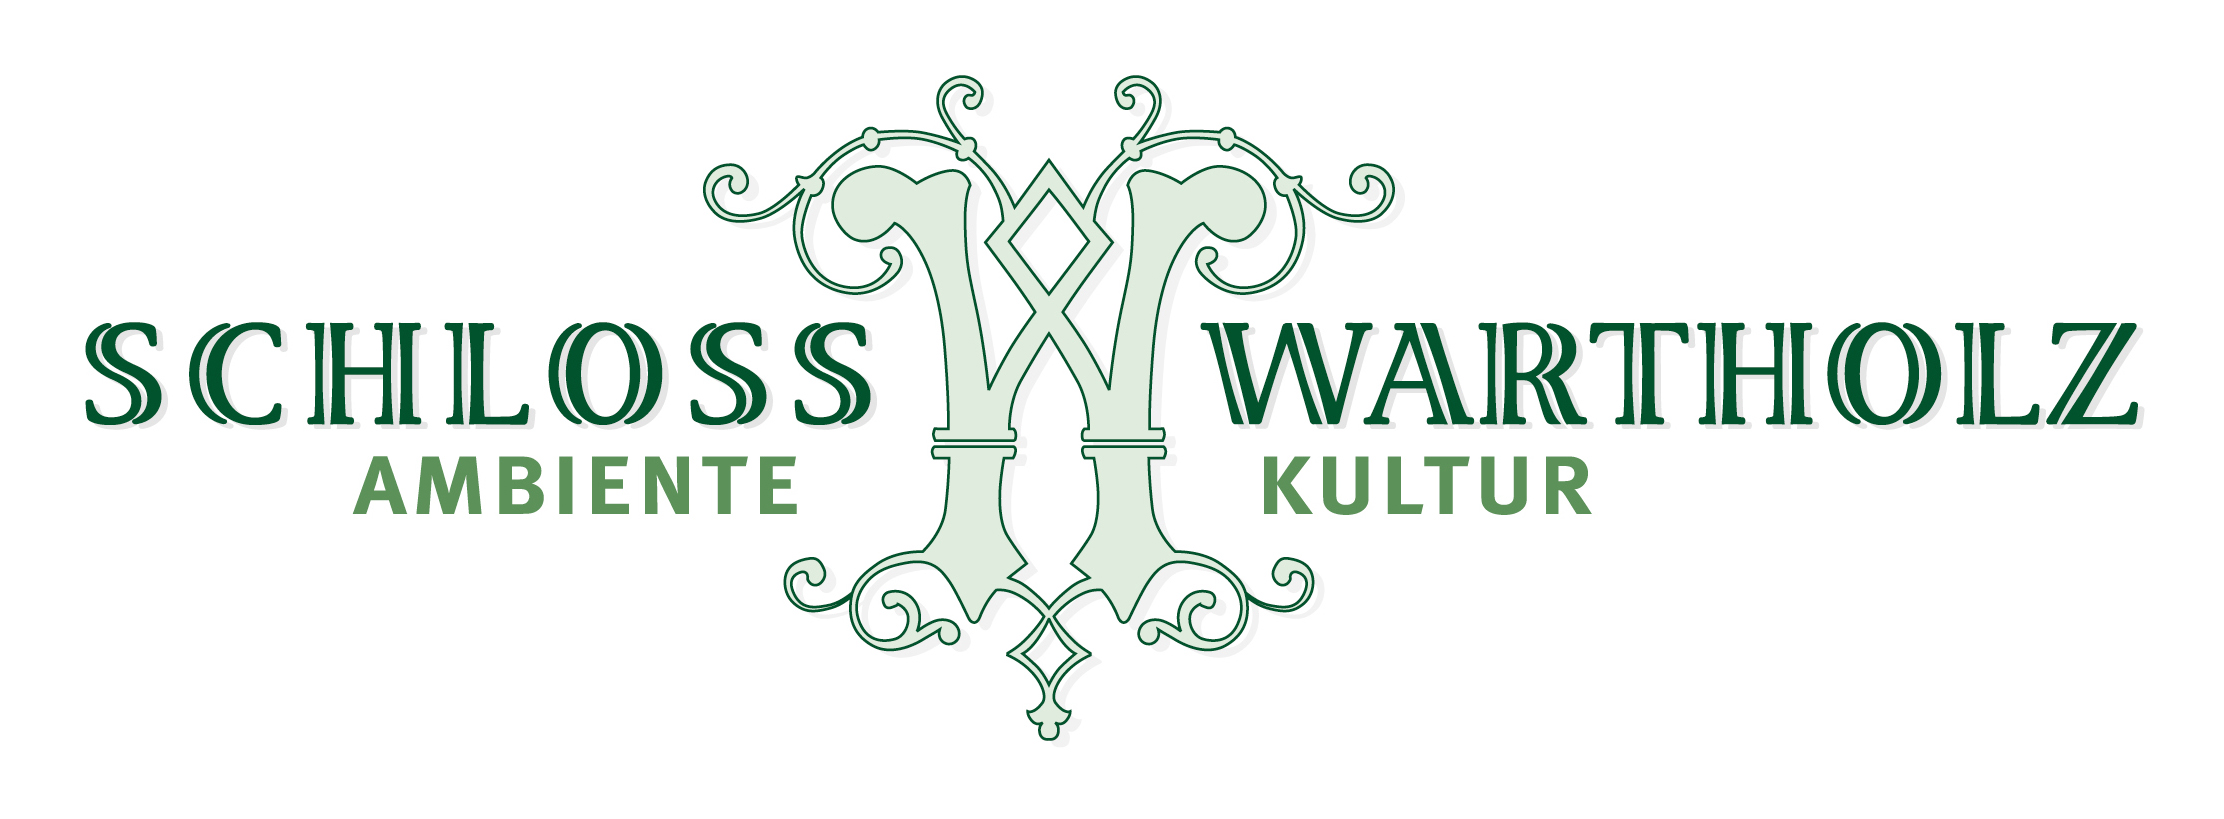 Logo Schloss wartholz